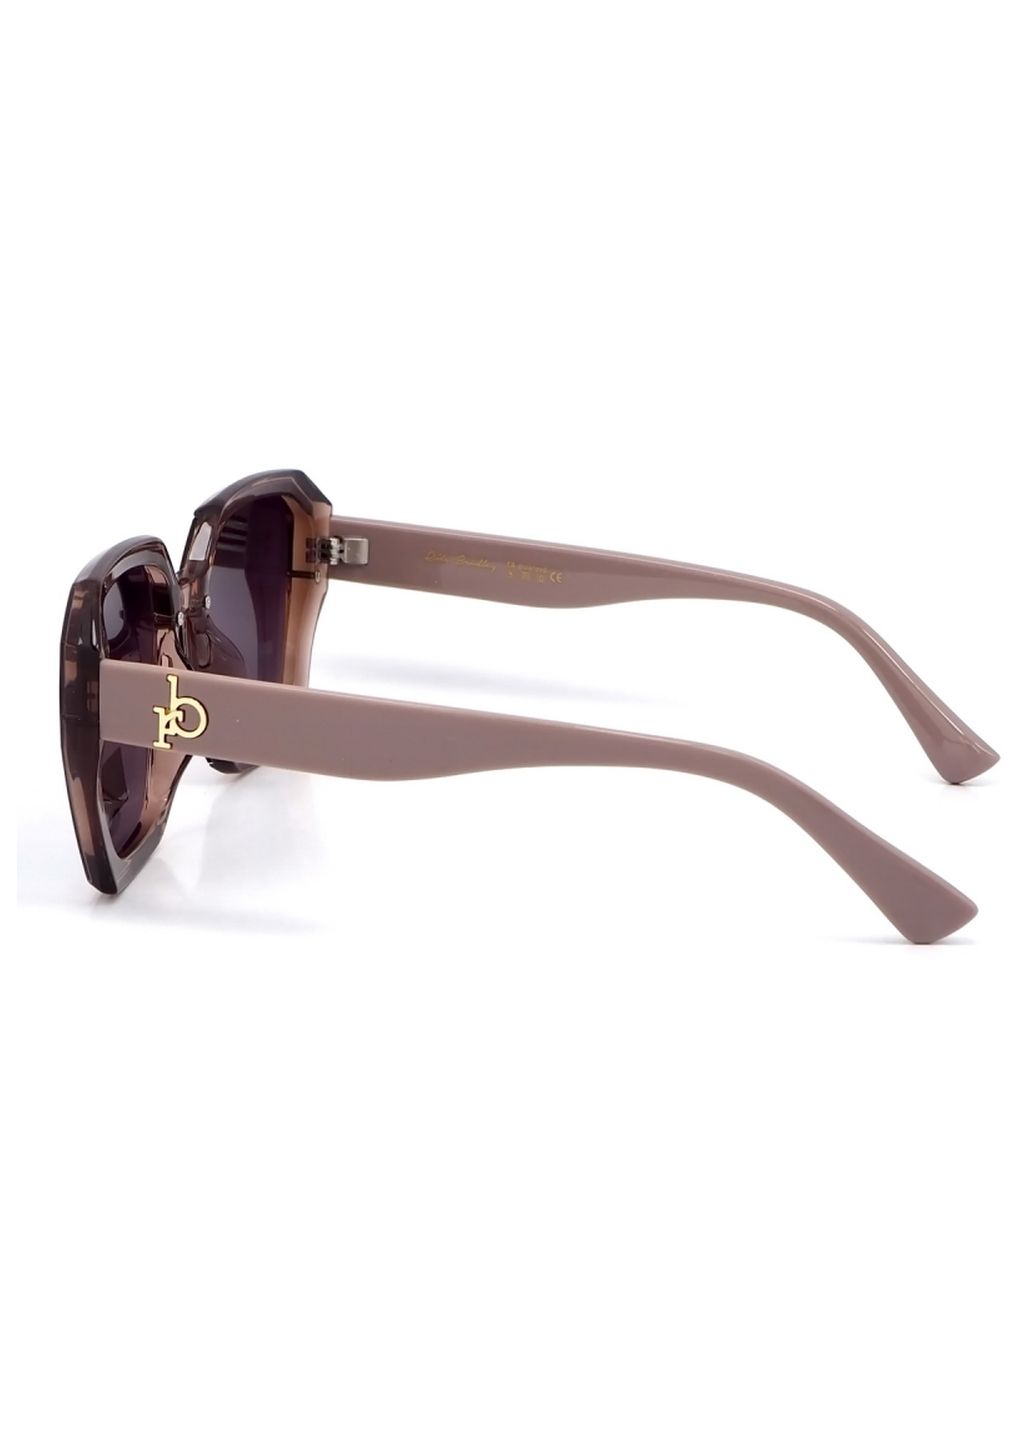 Купить Женские солнцезащитные очки Rita Bradley с поляризацией RB721 112029 в интернет-магазине